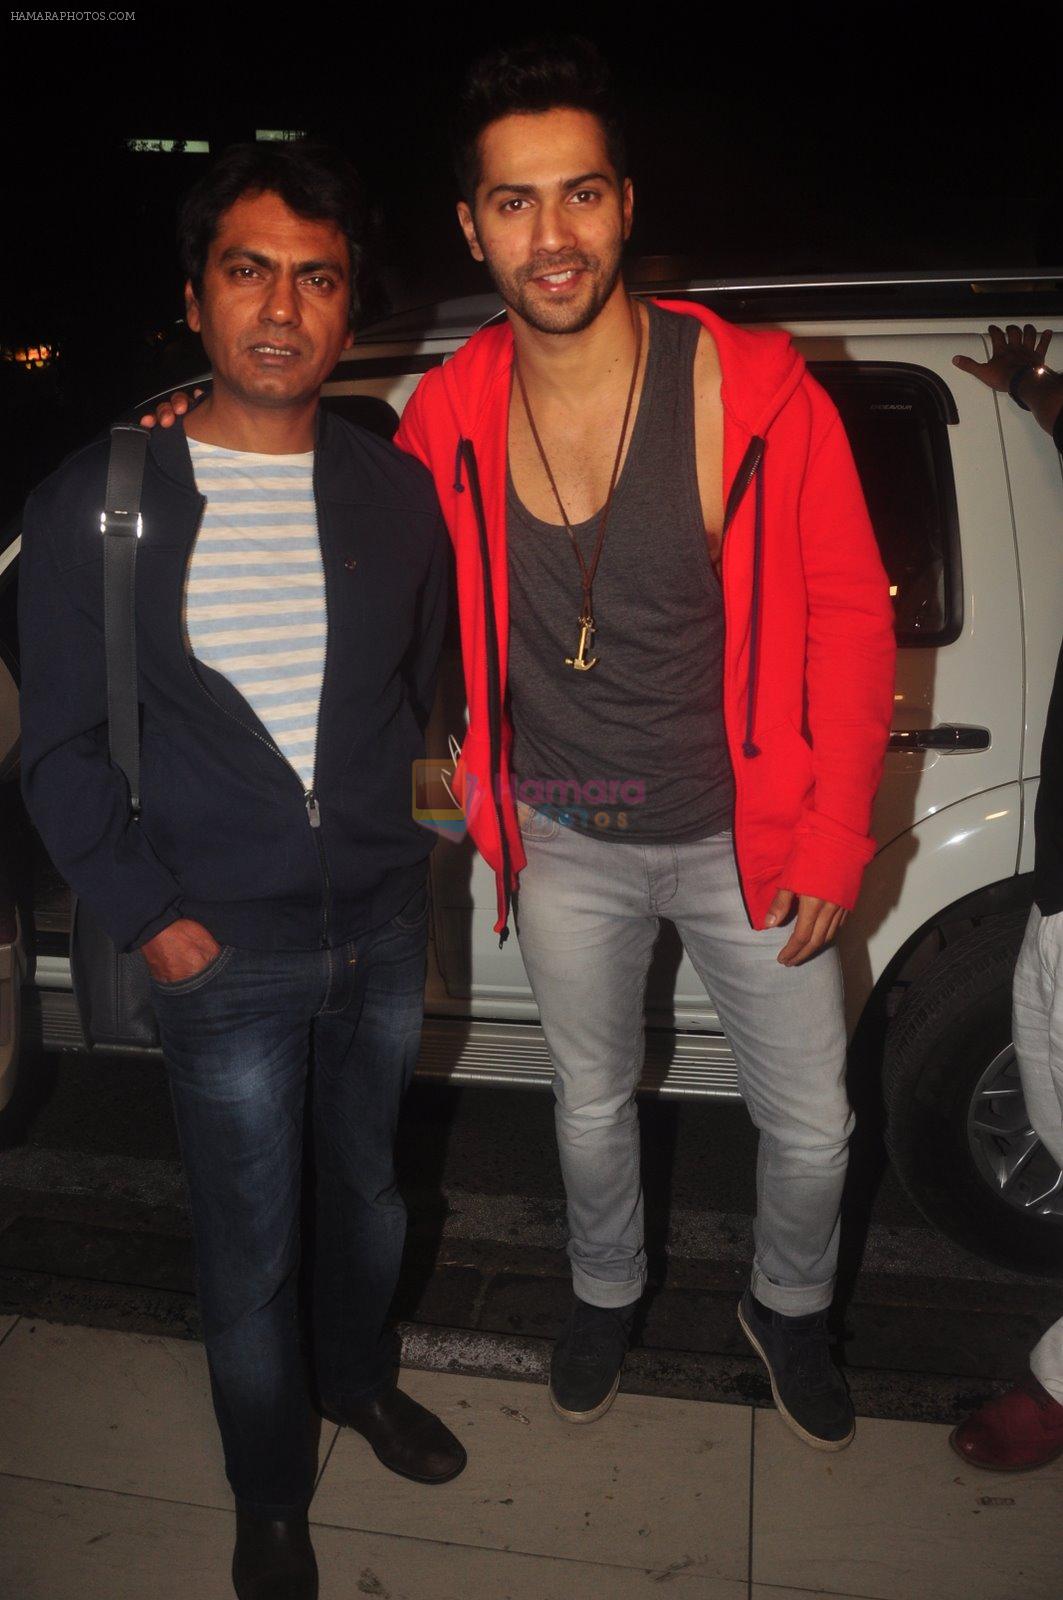 Varun Dhawan, Nawazuddin Siddiqui at Badlapur Screening in Sunny Super Sound on 18th Feb 2015